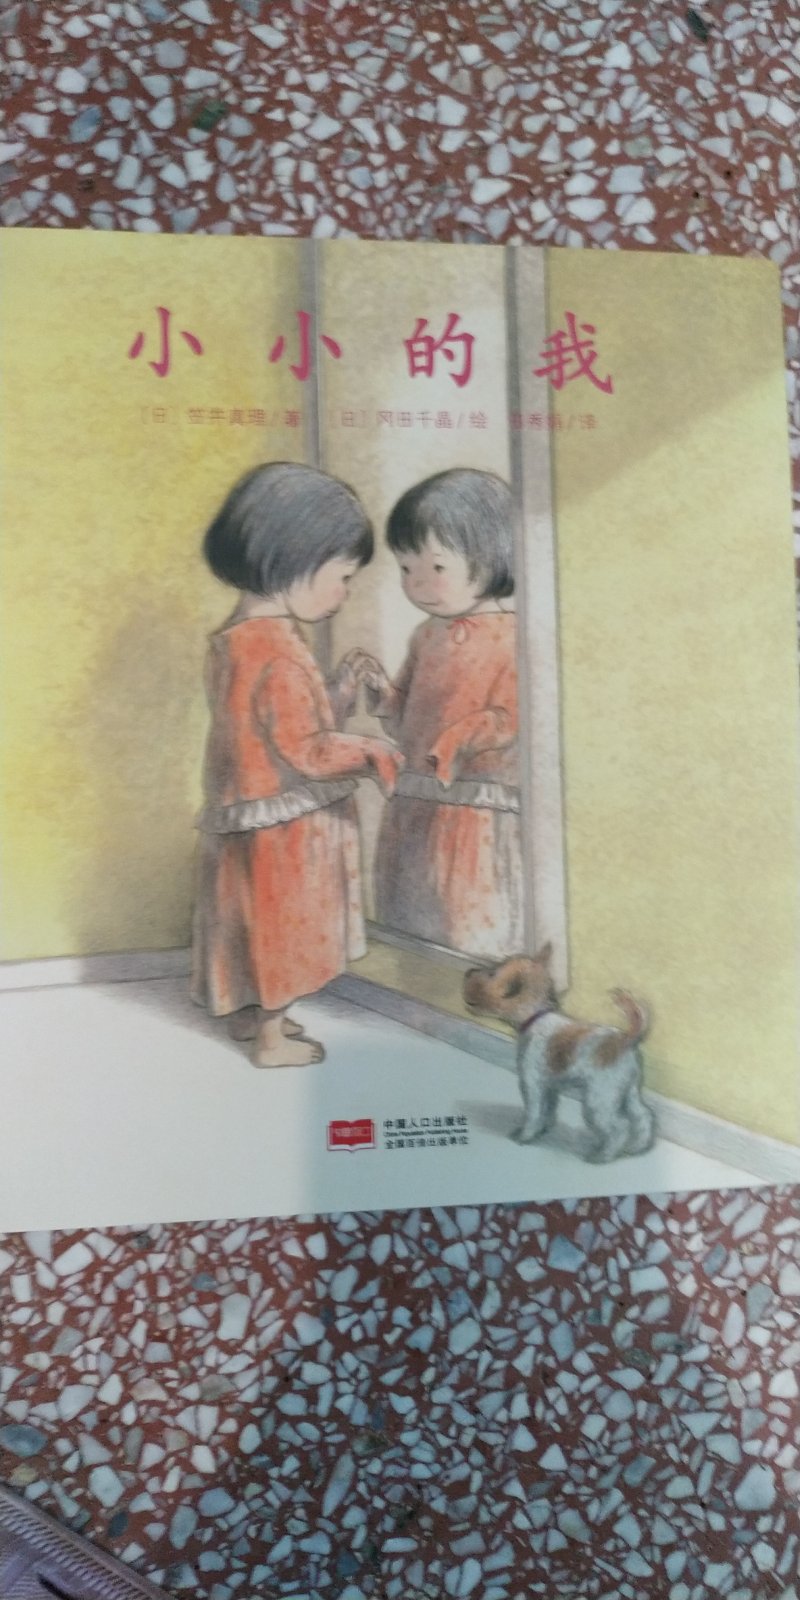 我觉得这书是给大人看的。画风挺好的，清晰，日式，小可爱。